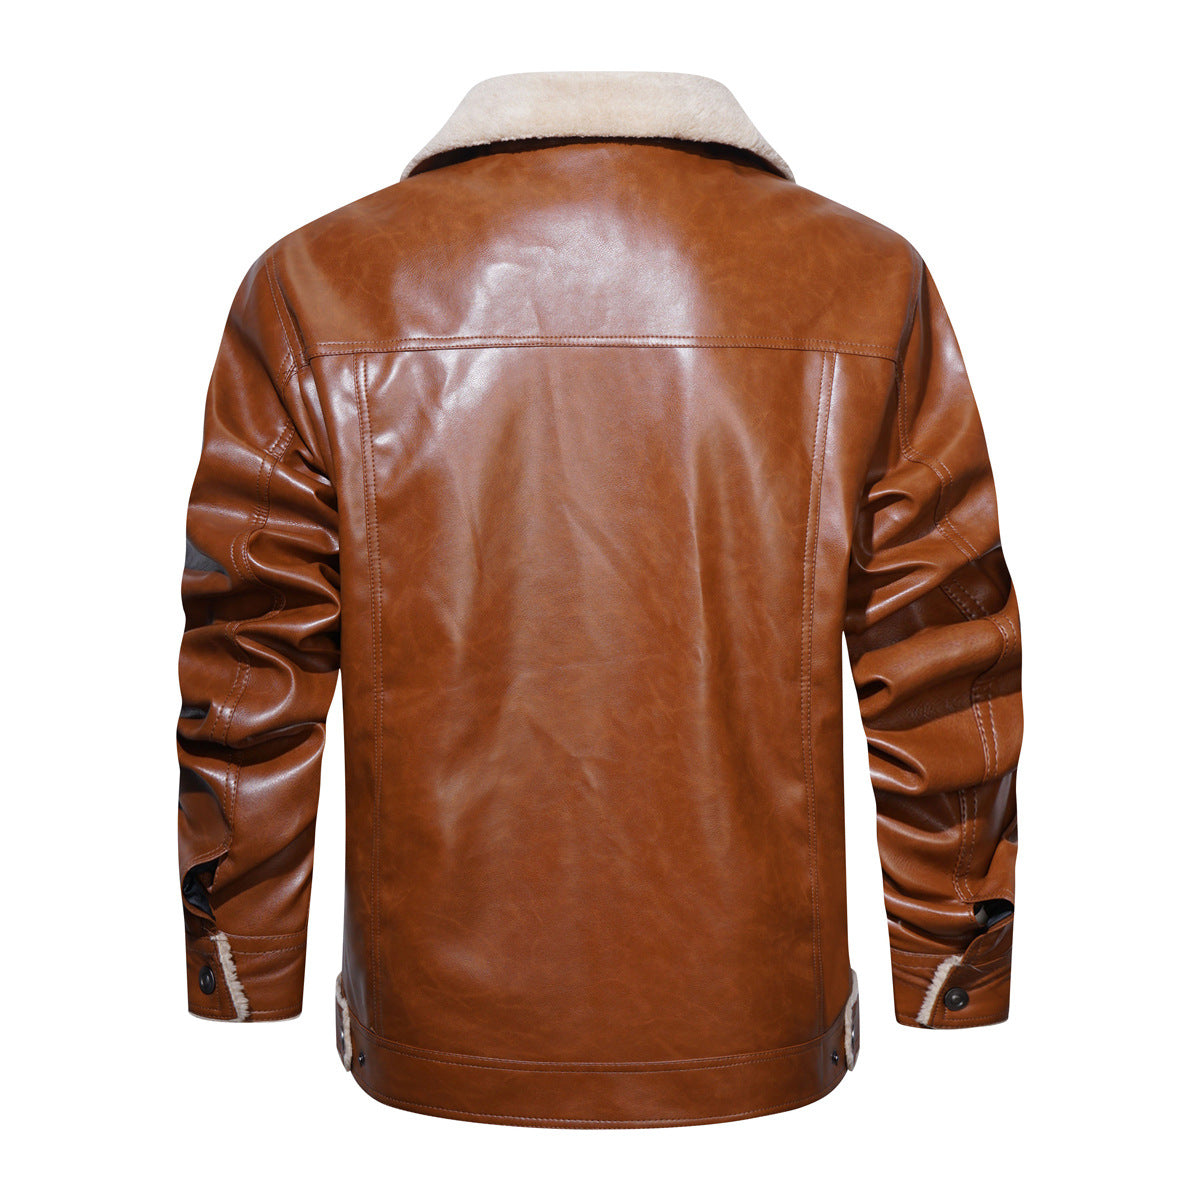 NS Shepherd Leather Jacket